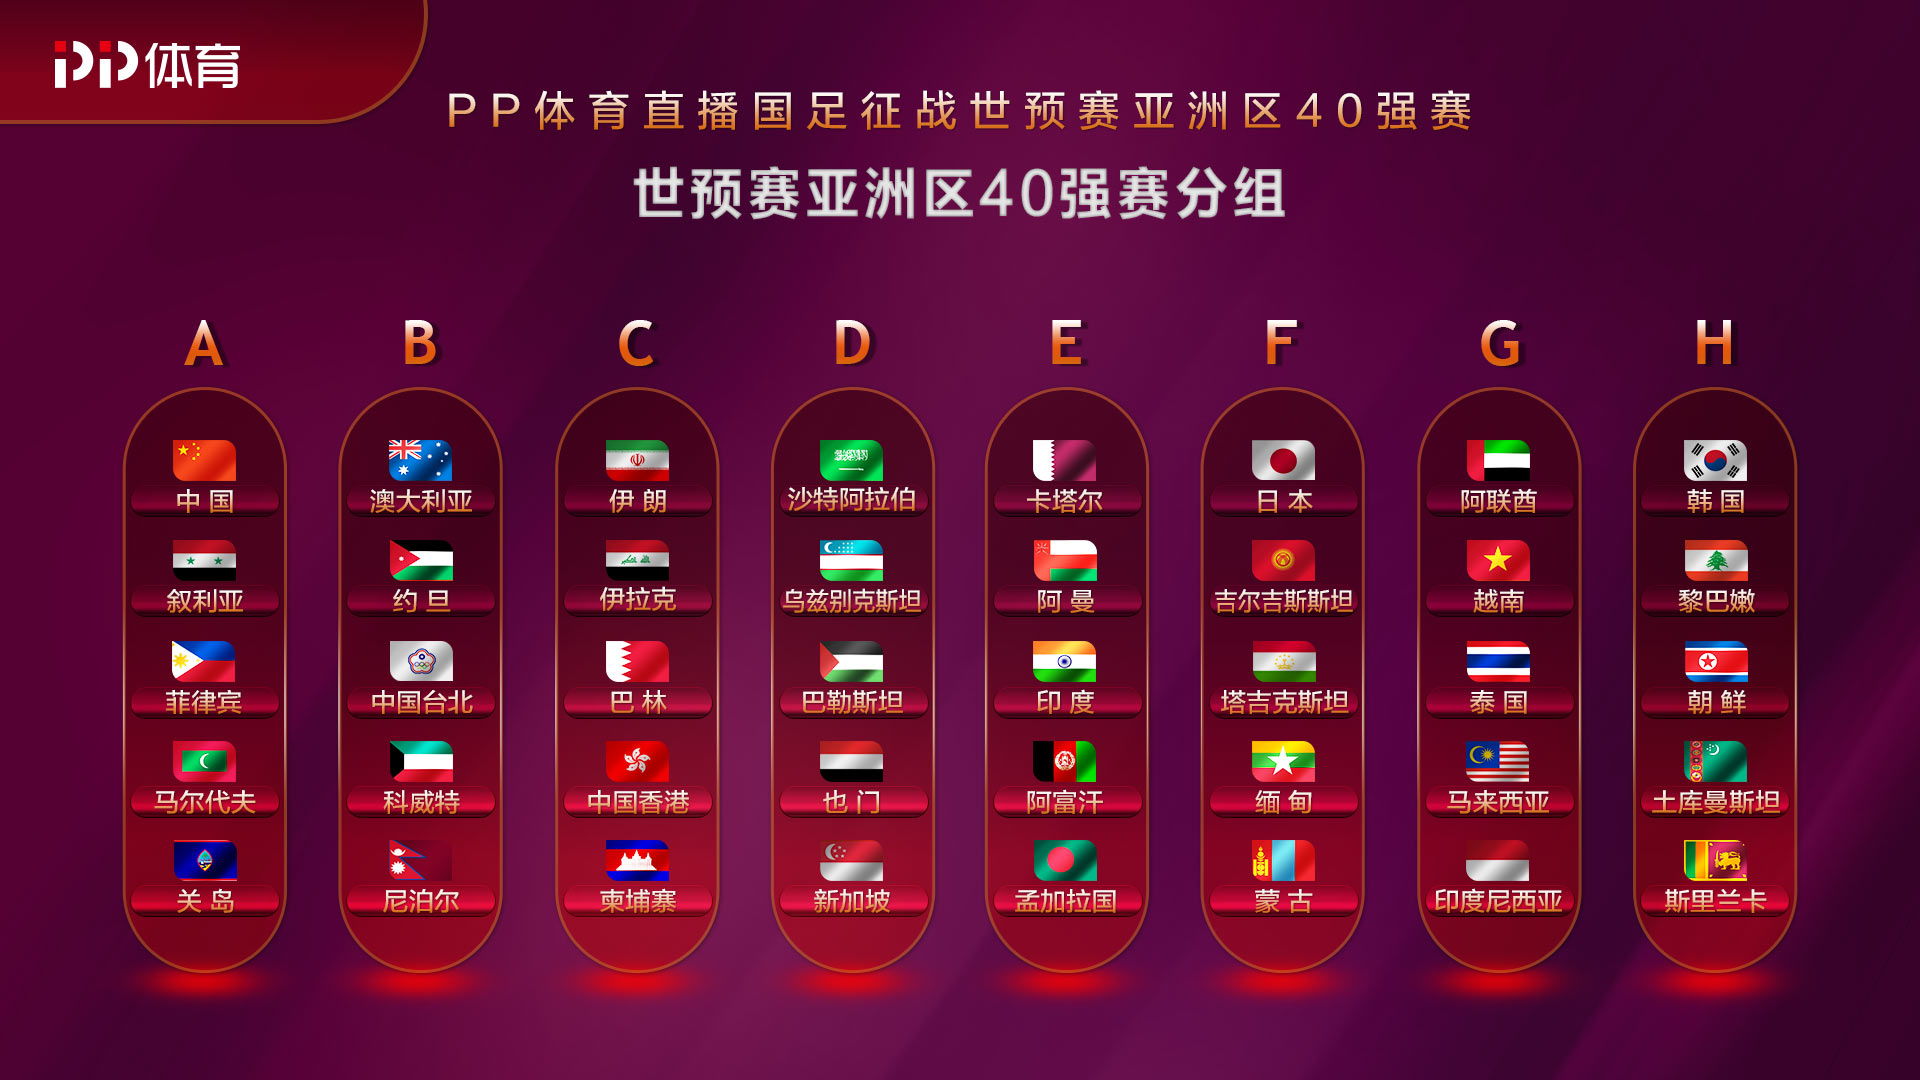 2022世界杯预选赛亚洲12强中国完整赛程（附赛程）